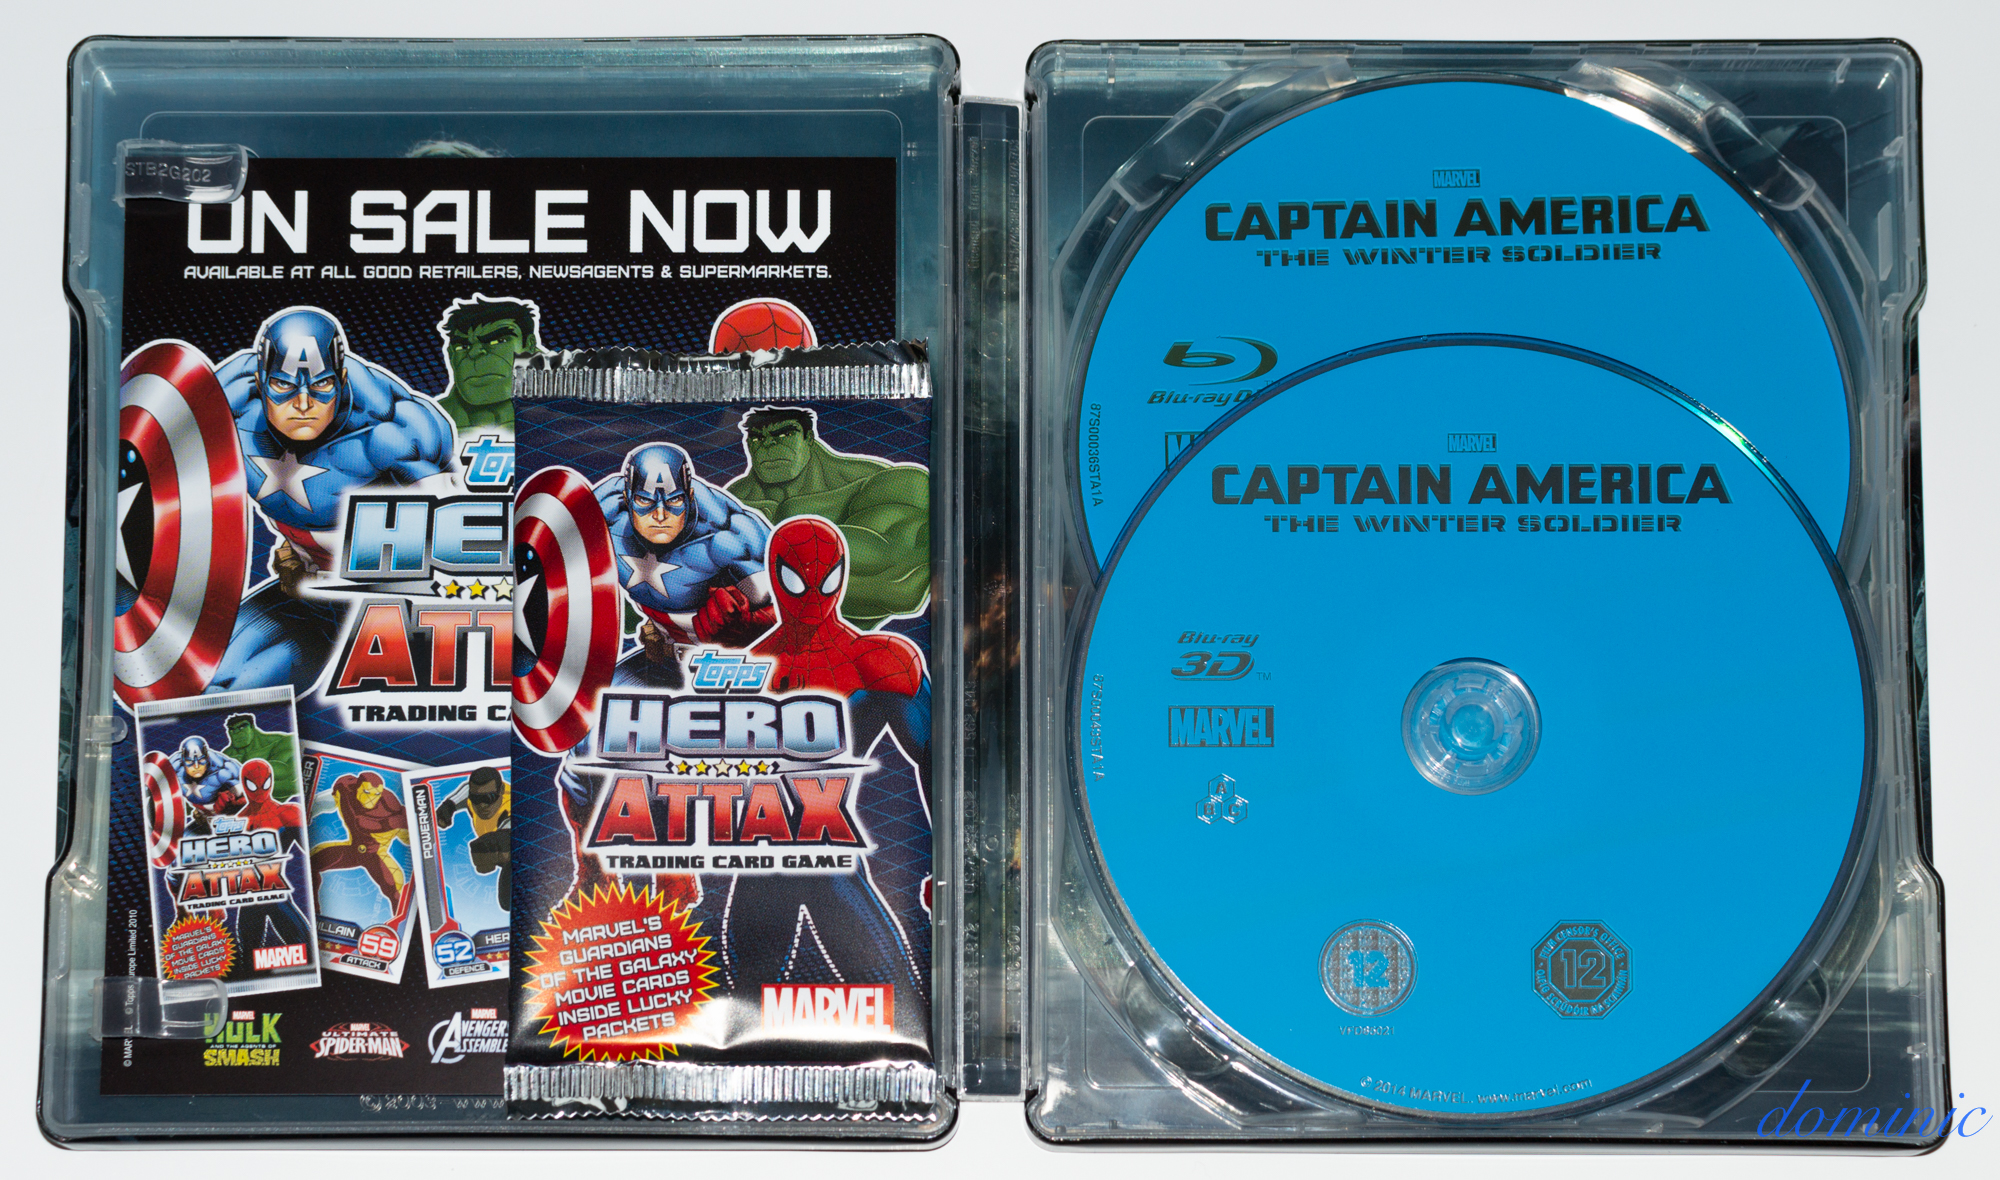 Captain America 2 - Inside 2